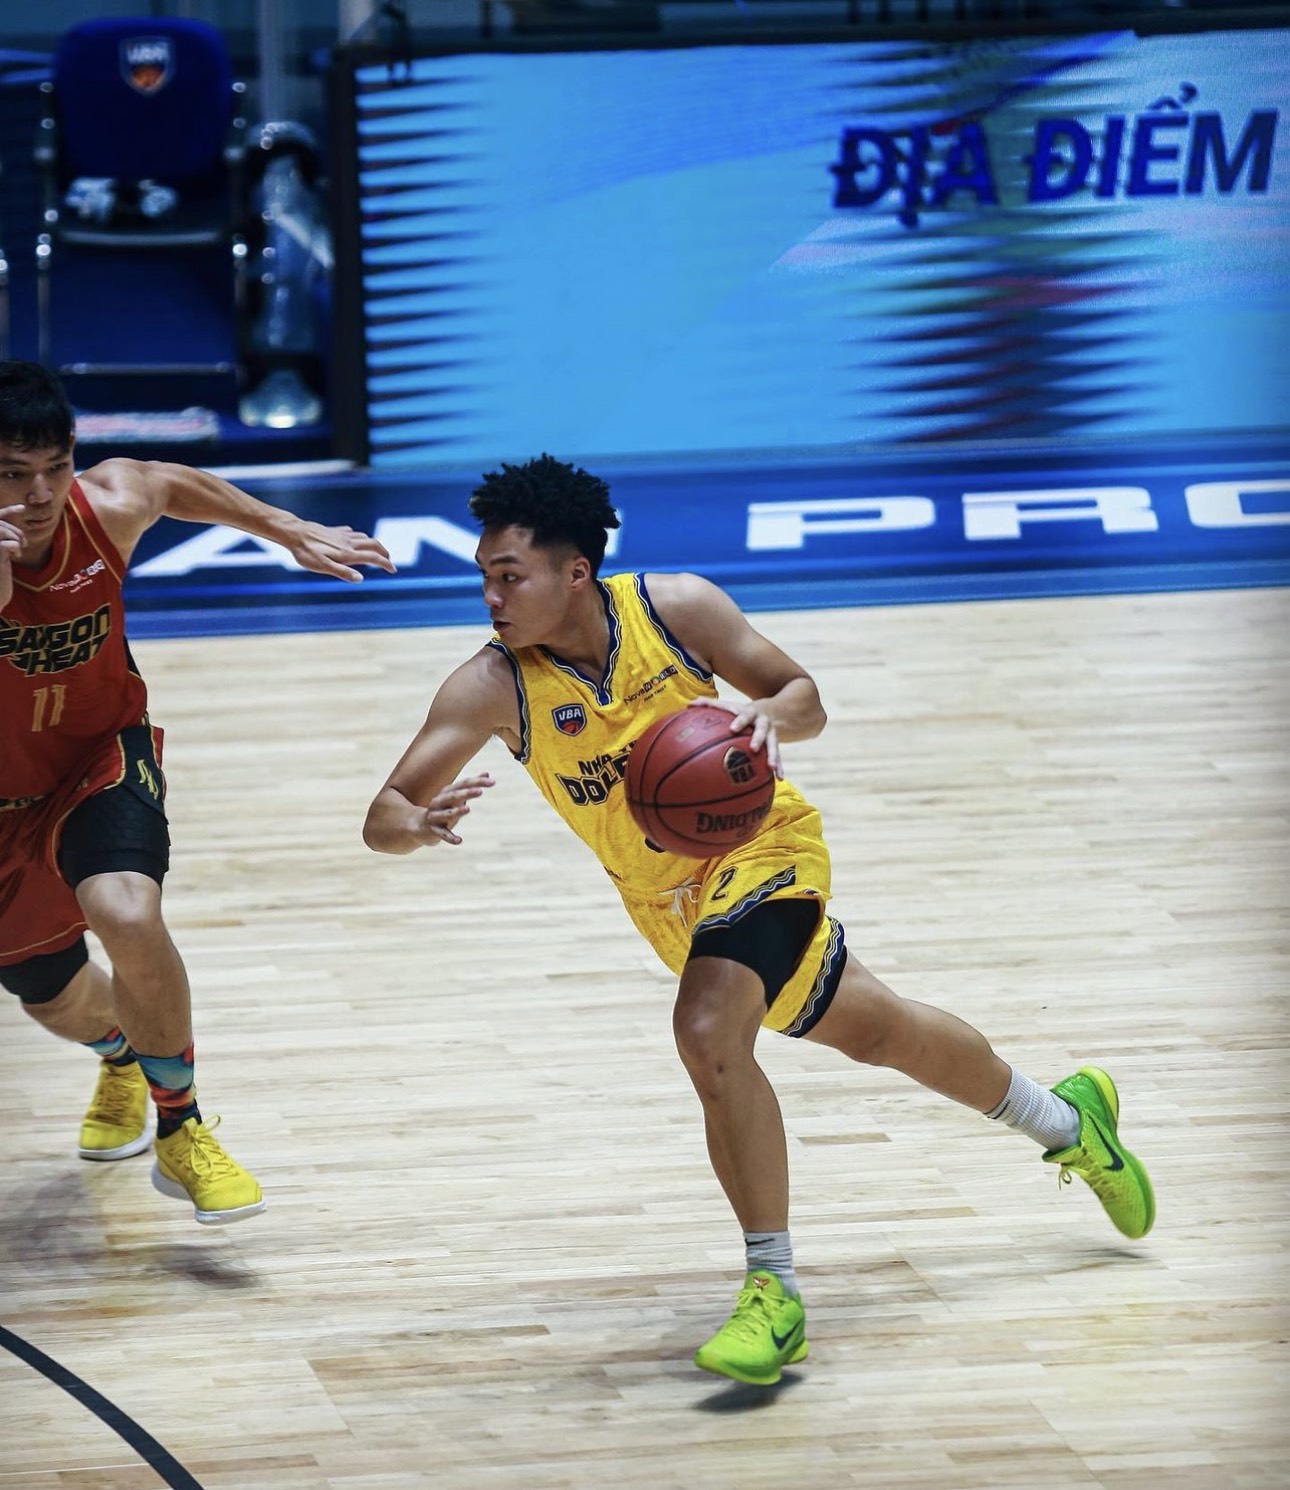 Cầu thủ bóng rổ Melvin Phùng và màn trở lại ấn tượng sau chấn thương - Ảnh 1.